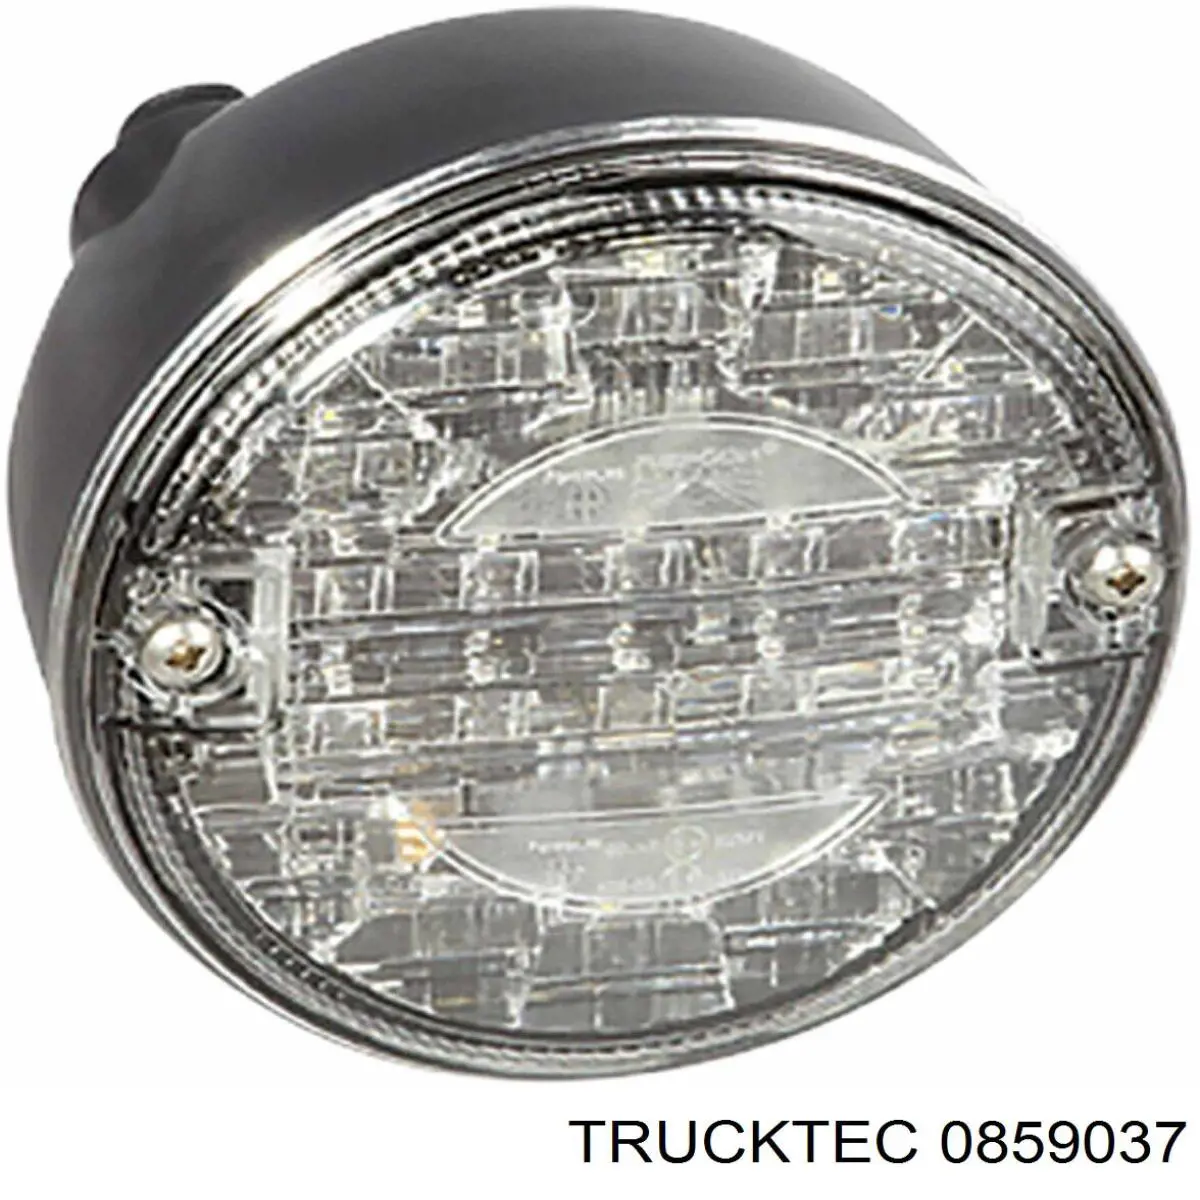 08.59.037 Trucktec brida del sistema de refrigeración (triple)